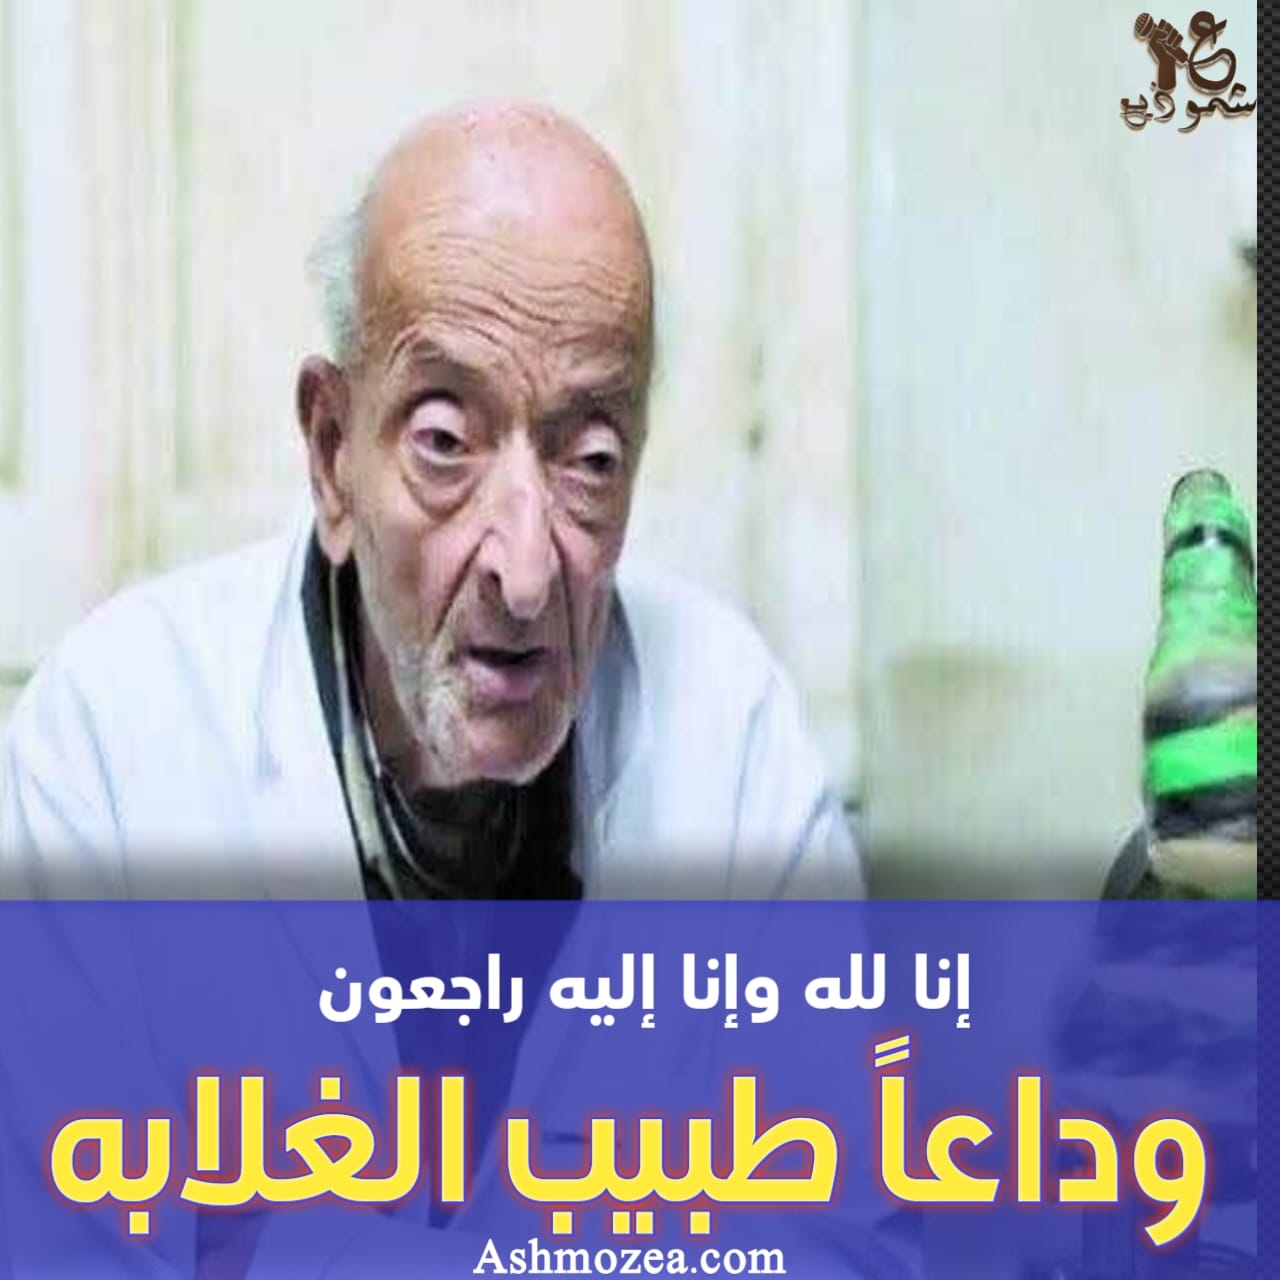 وفاة الدكتور محمد مشالي" طبيب الغلابة" عن عمر يناهز ال" 76" عامًا